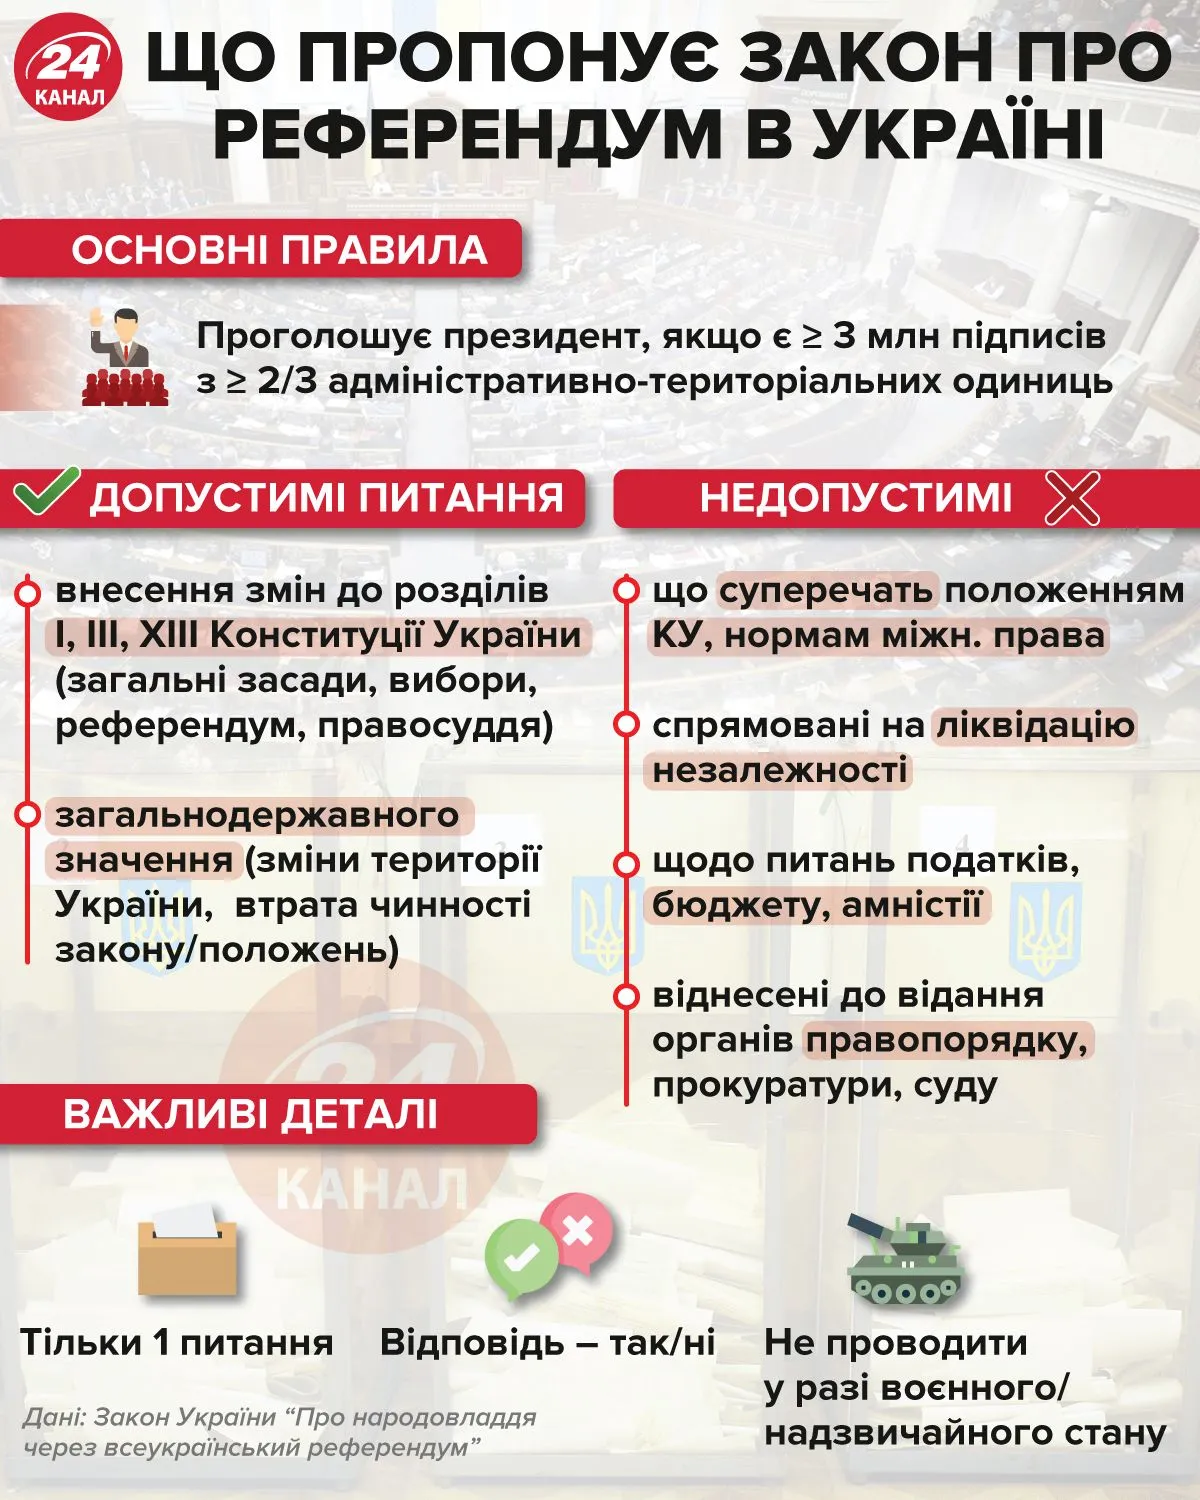 Что предлагает закон о референдуме / Инфографика 24 канала